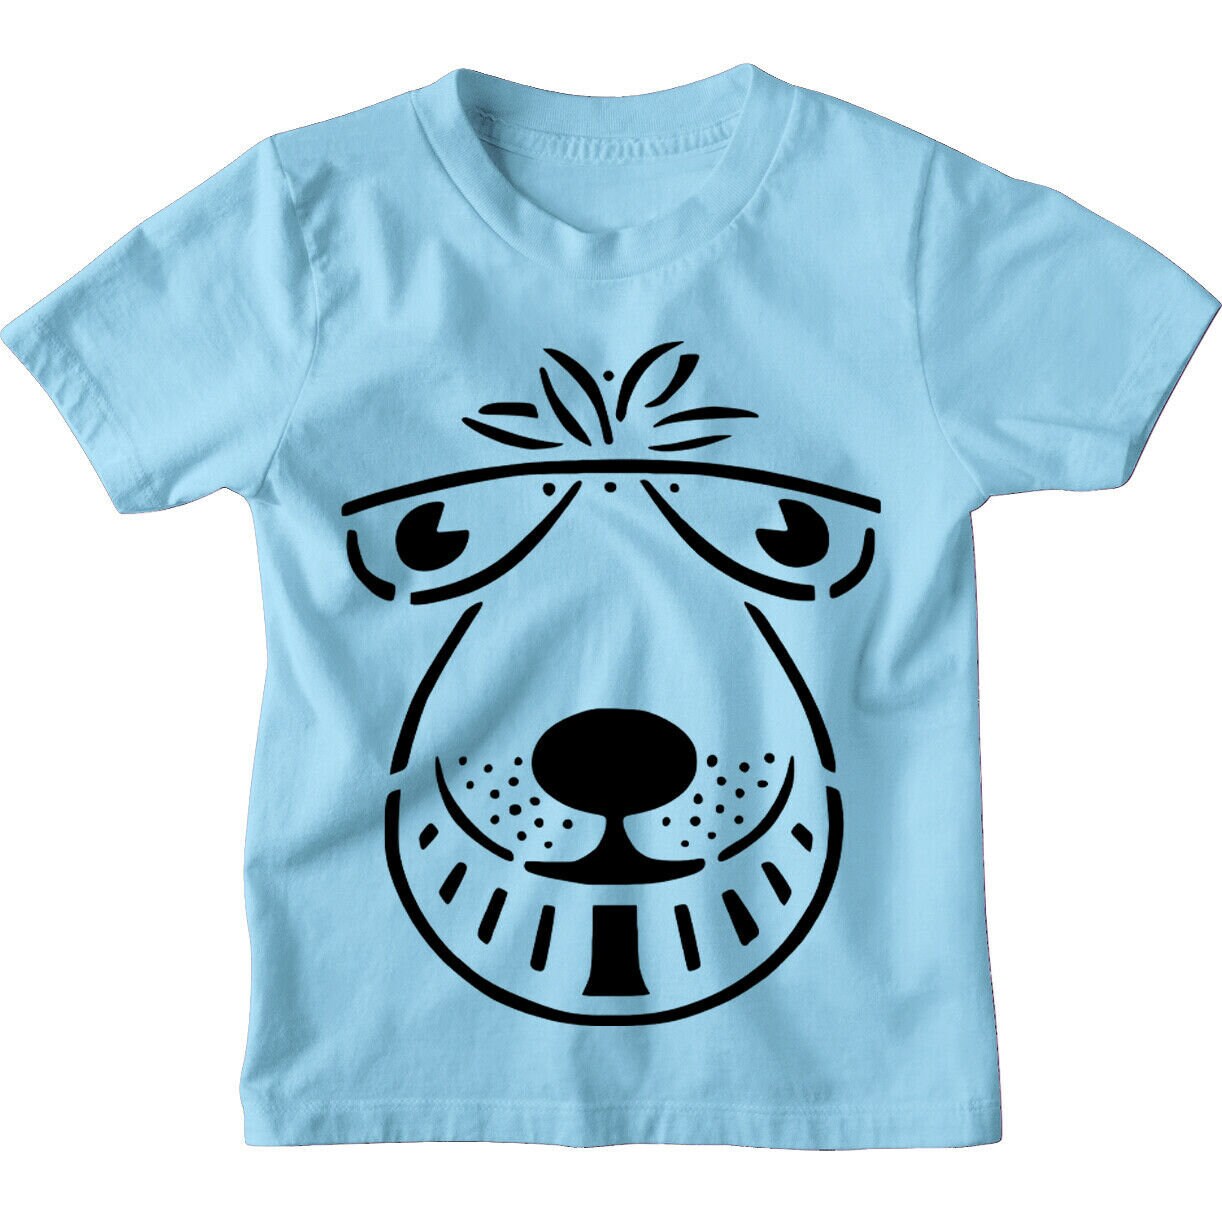 Kids Boys or Girls funny Bouncer Tee Children's Space Hopper T Shirt 